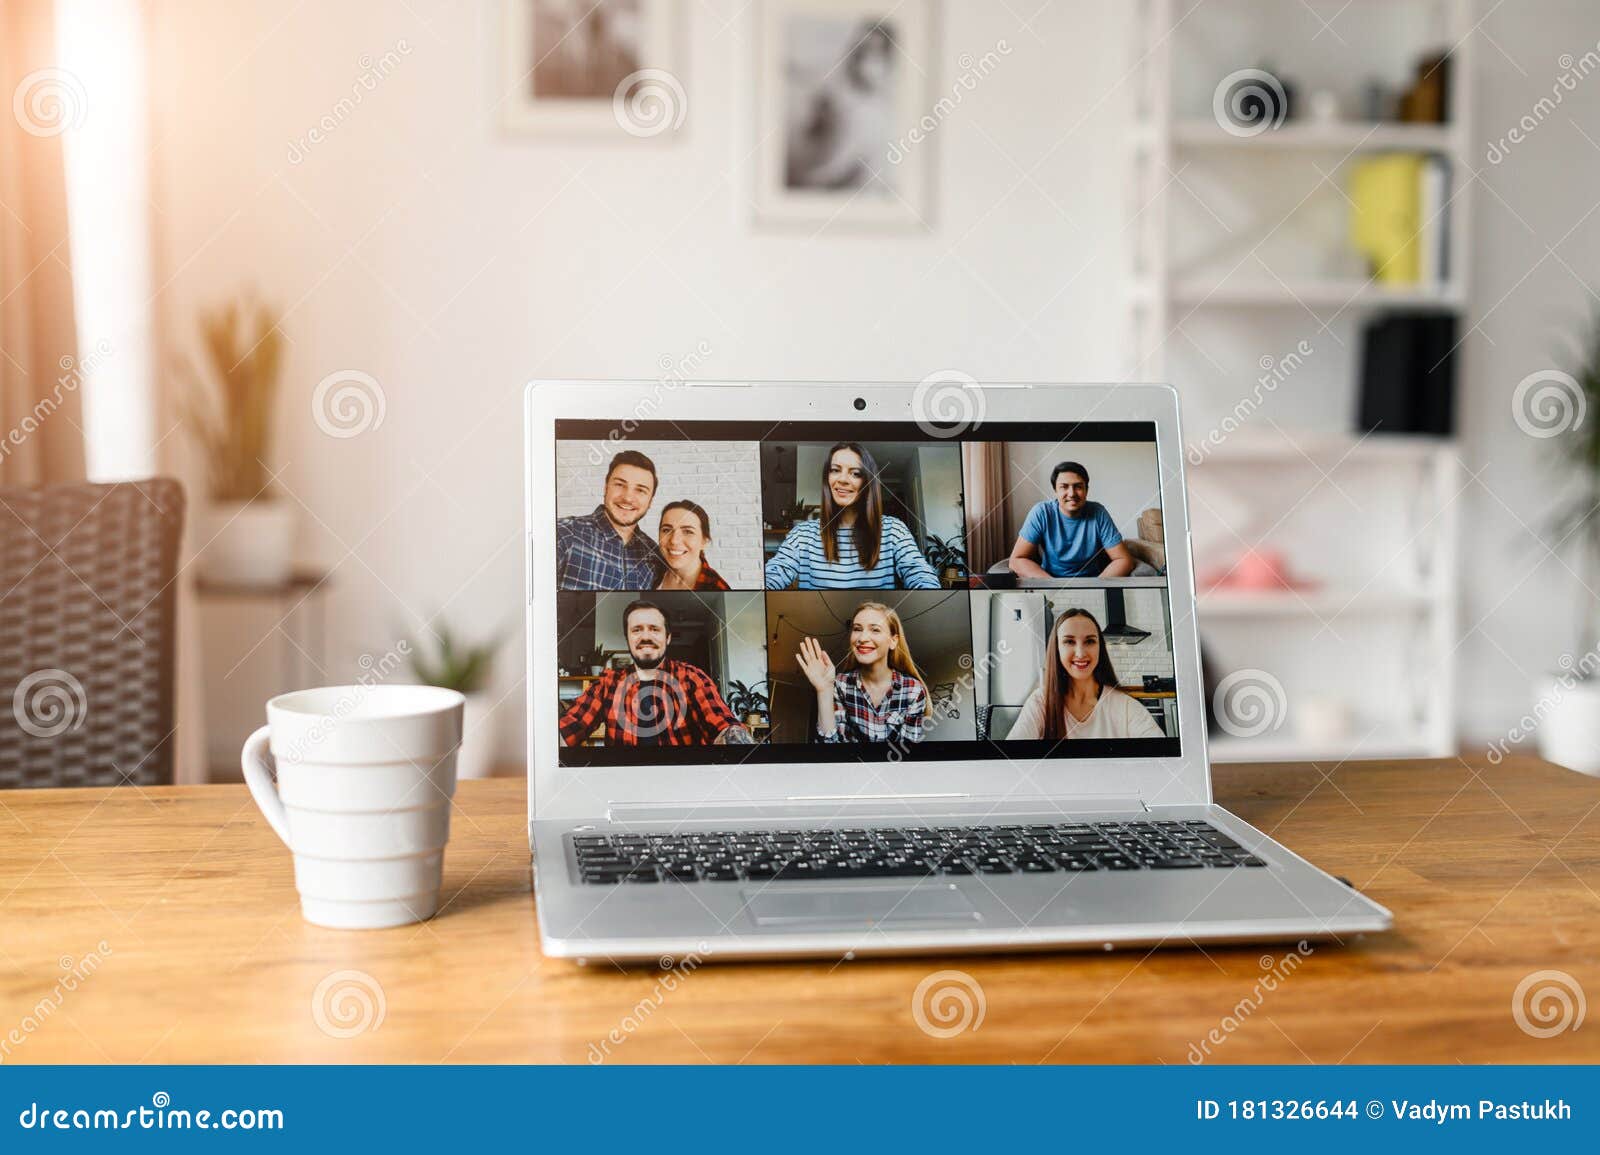 video meeting on laptop screen, zoom app